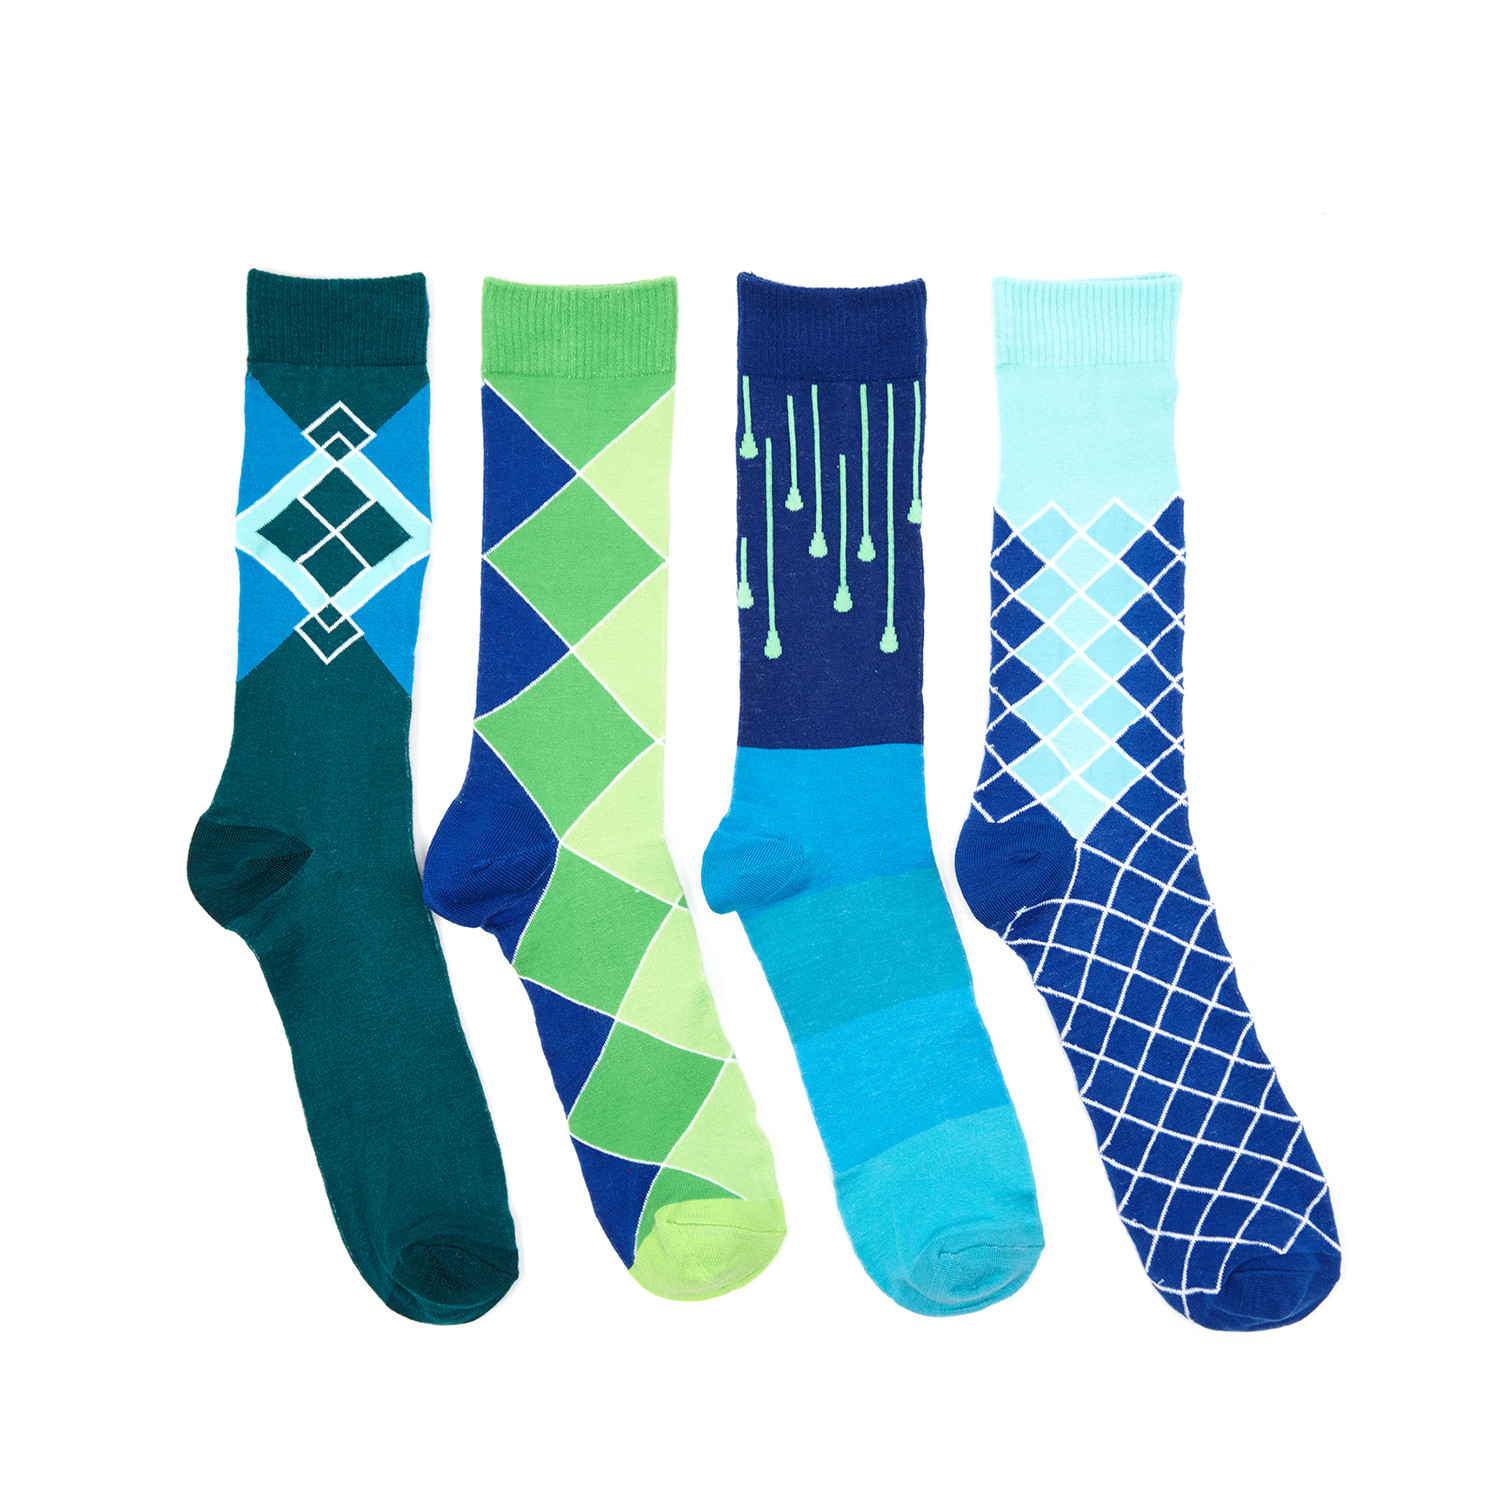 Cool Runnings Sock Pack // Set of 4 - Evoke Socks - Touch of Modern